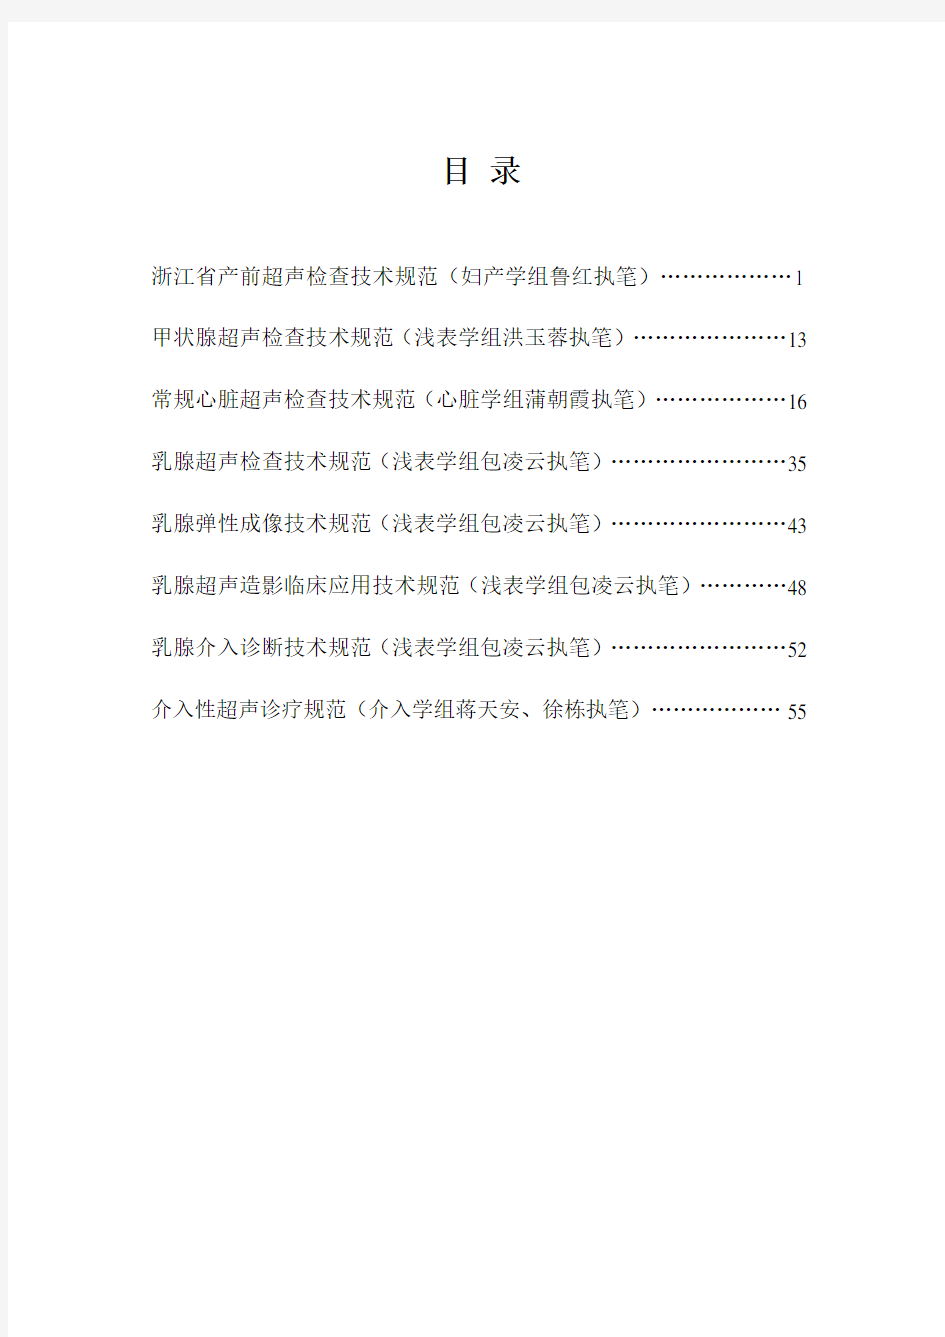 浙江省超声医学规范指南(2014年)